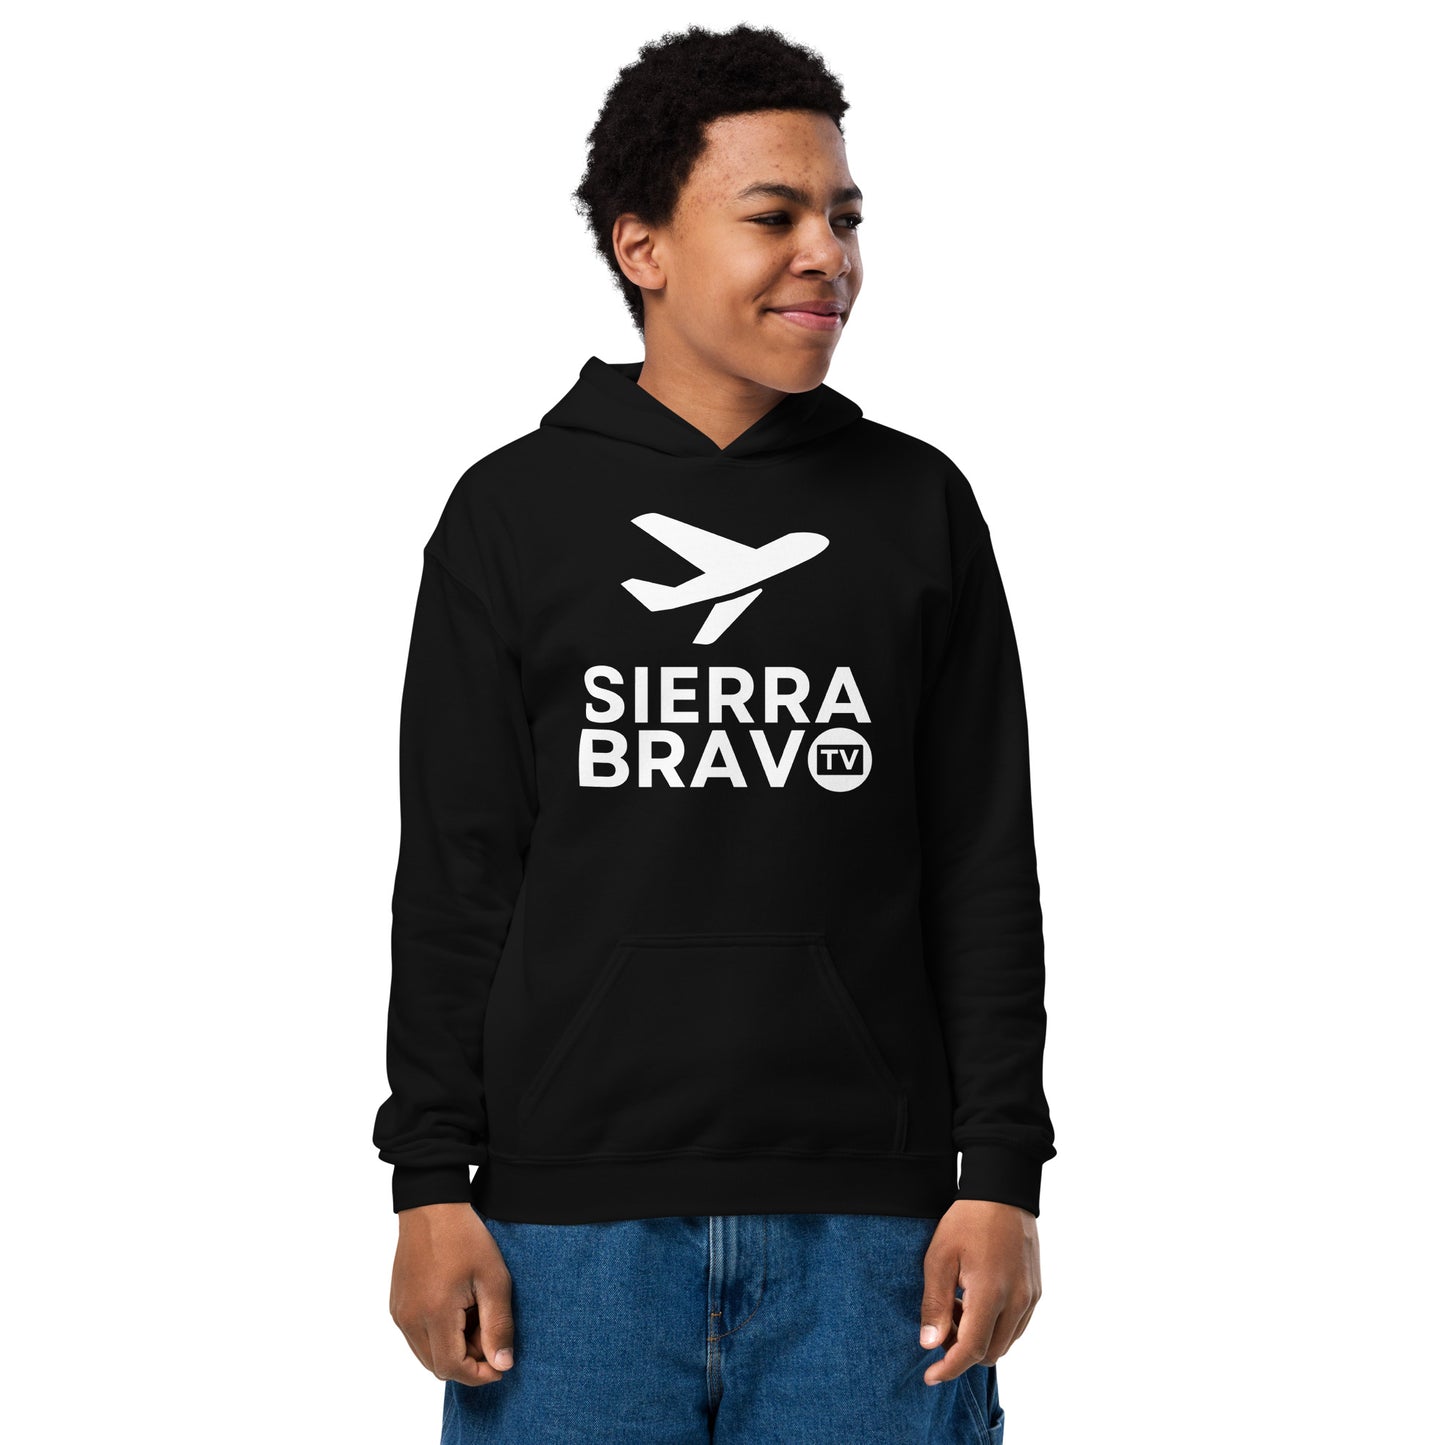 Sierra Bravo TV Youth heavy blend hoodie